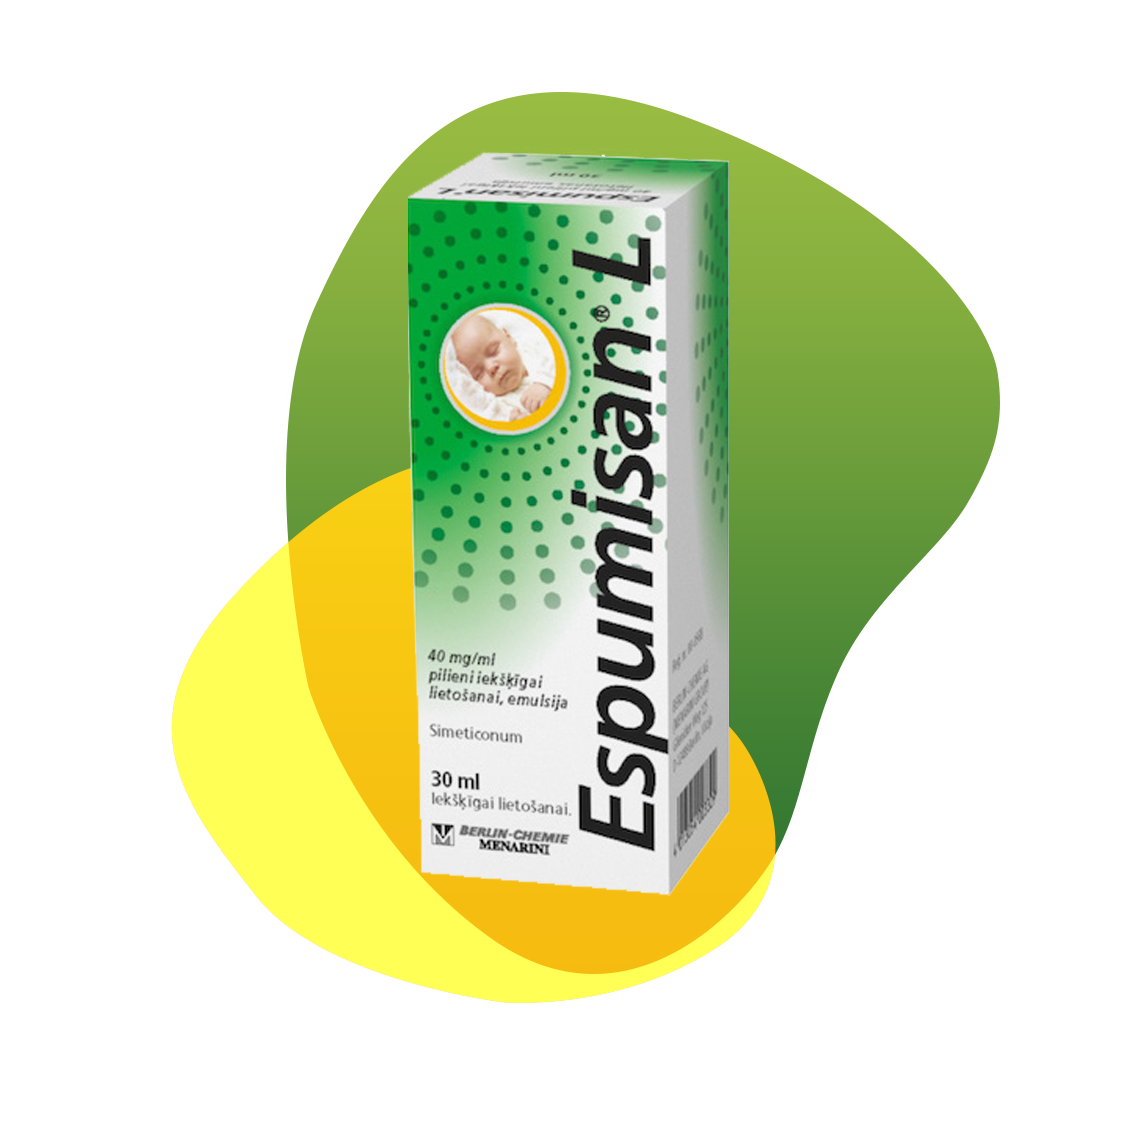 Packaging of Espumisan